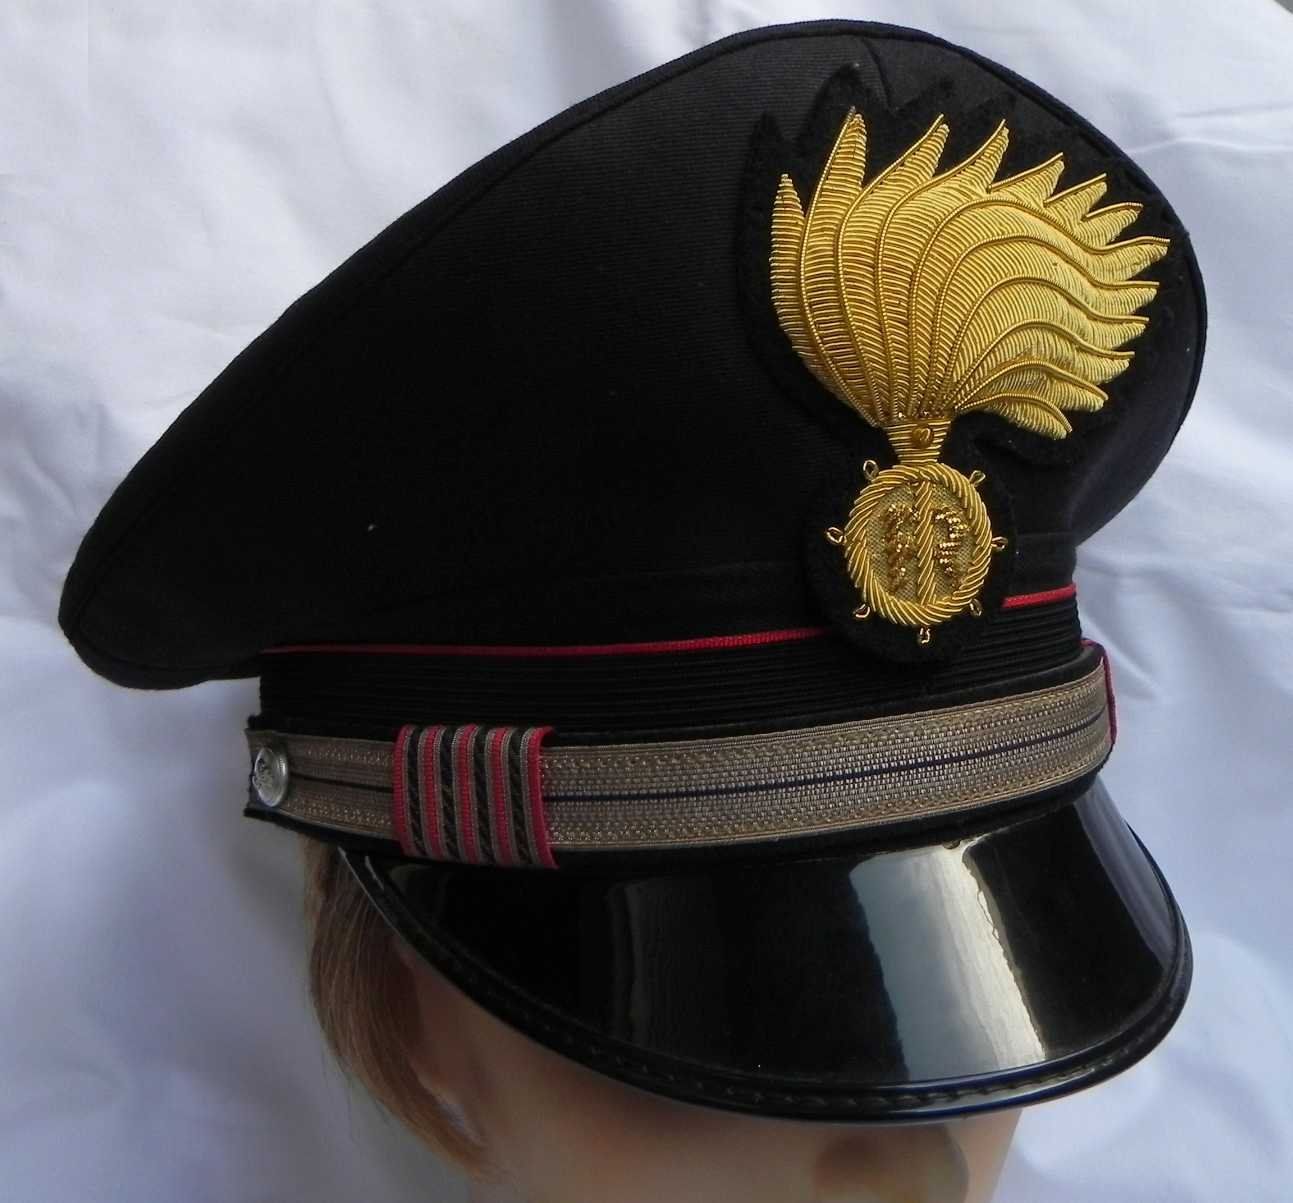 A Lu ogni martedì il Servizio di Ascolto dei Carabinieri